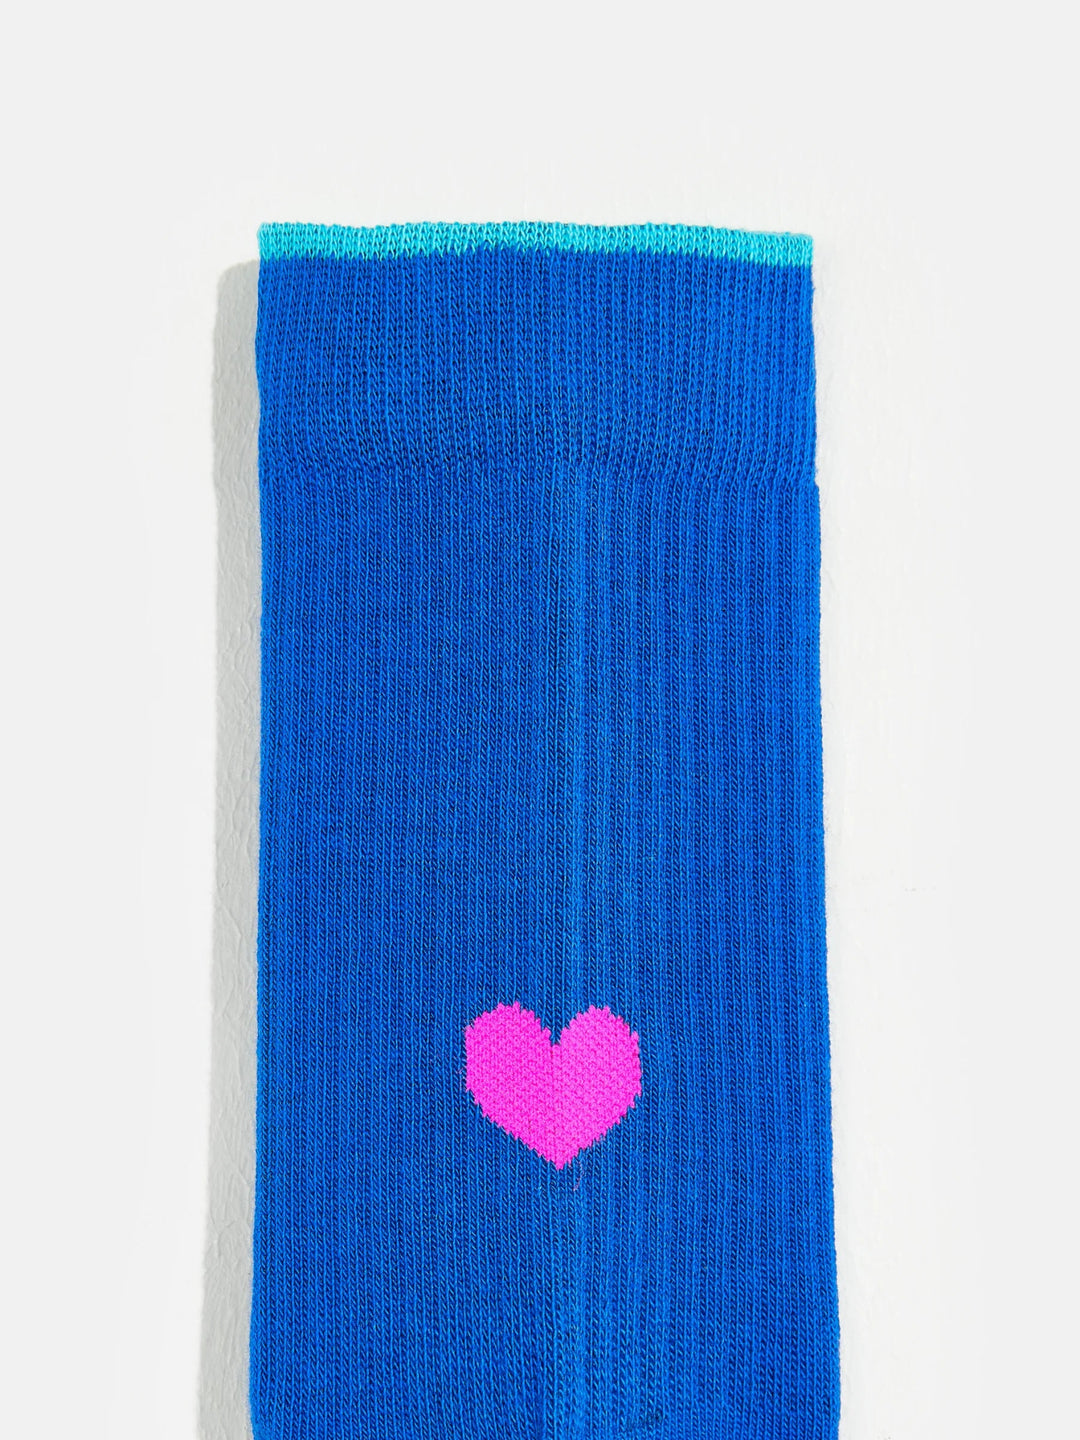 Beart Socks - Blueworker - Posh New York